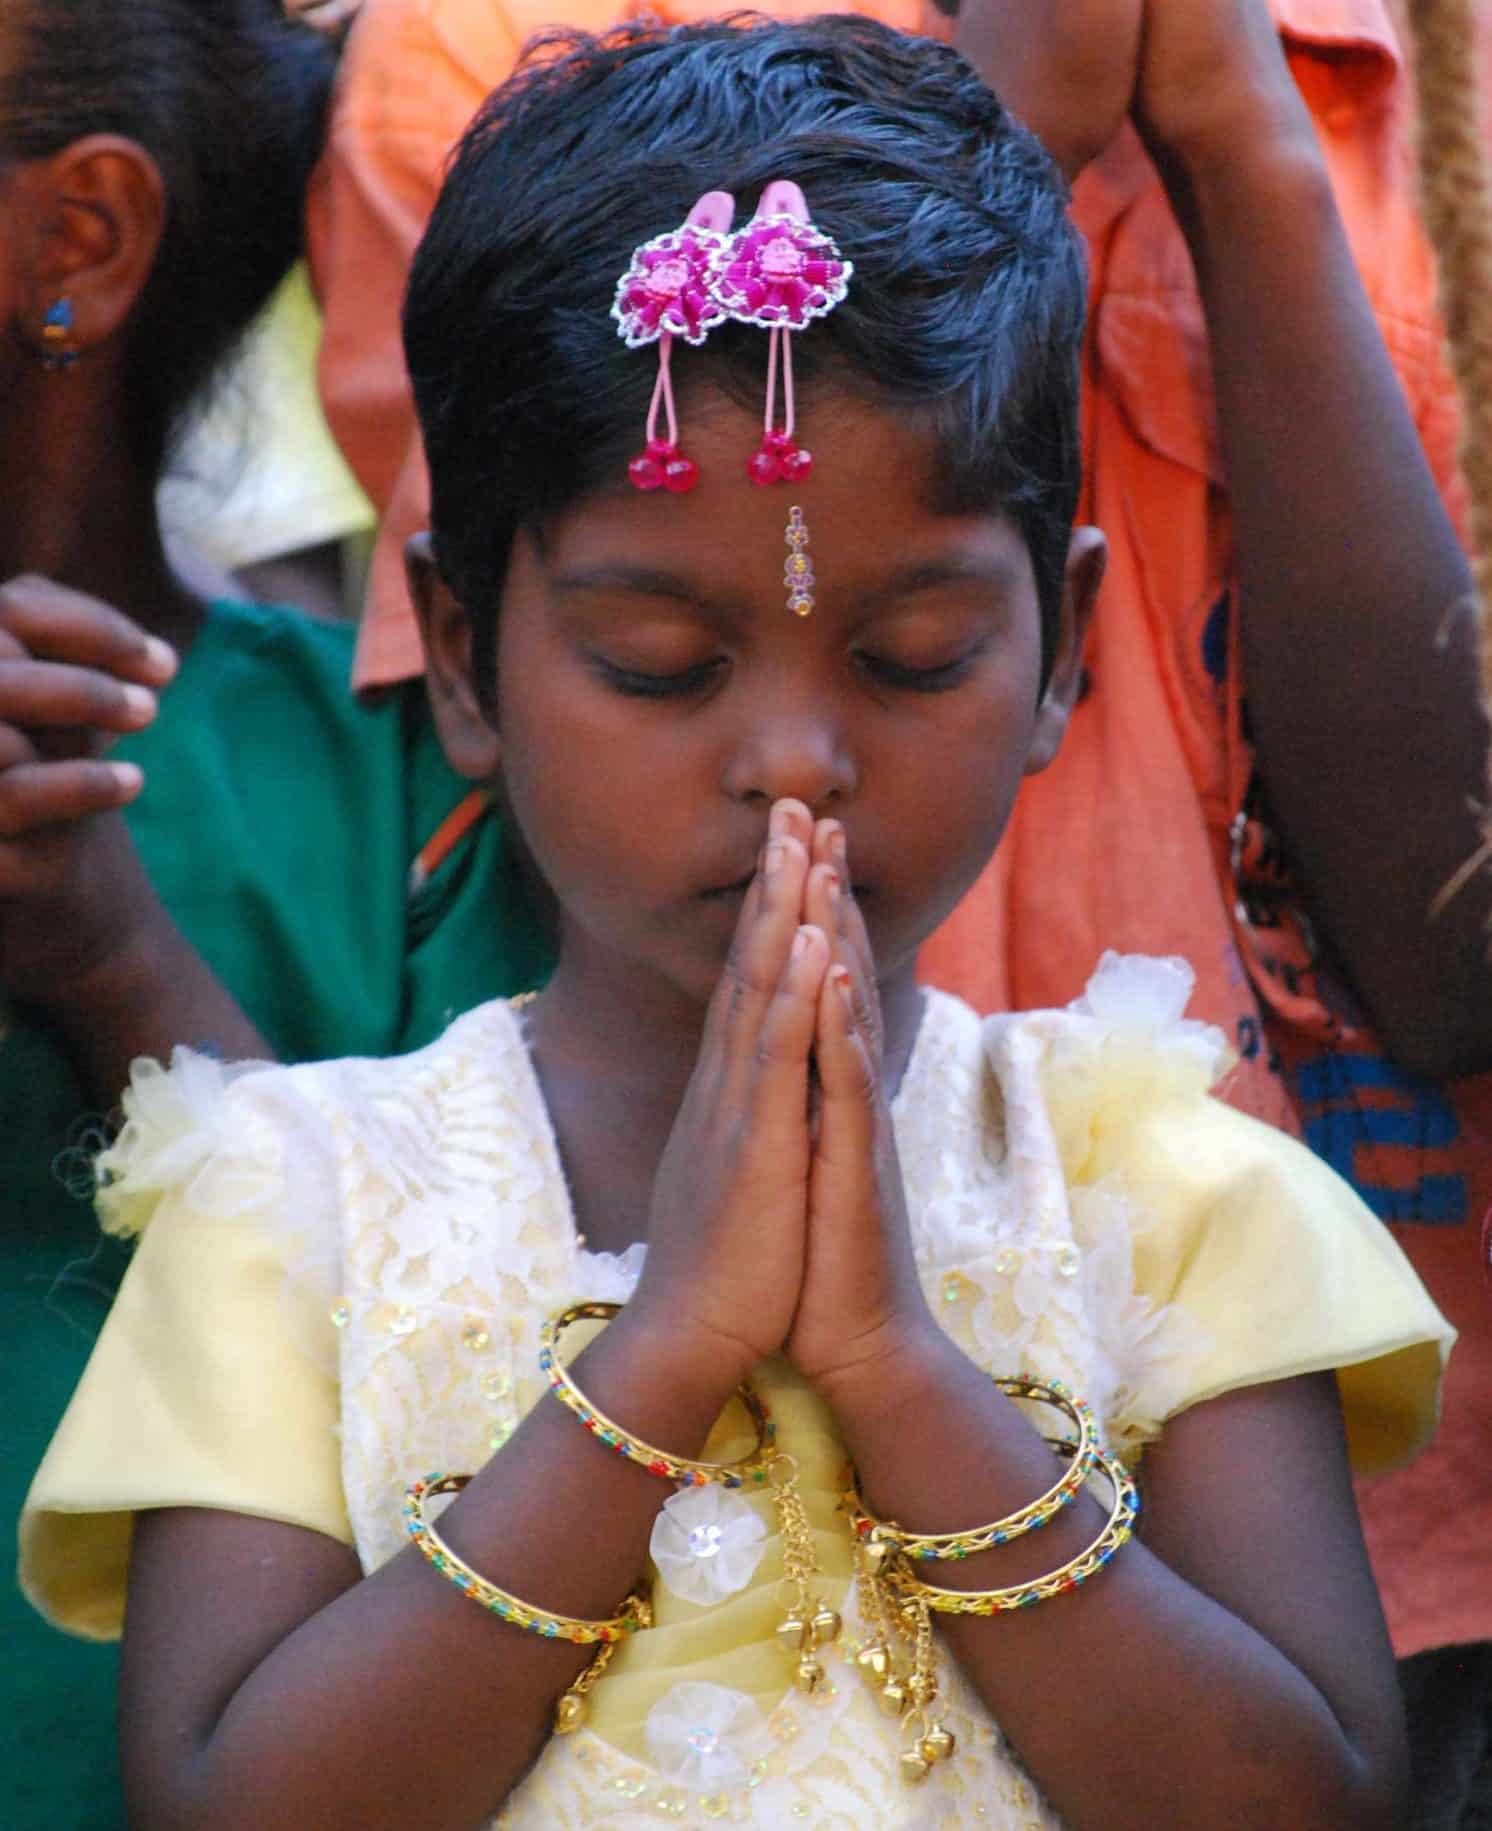 Praying Indian Girl at CBS